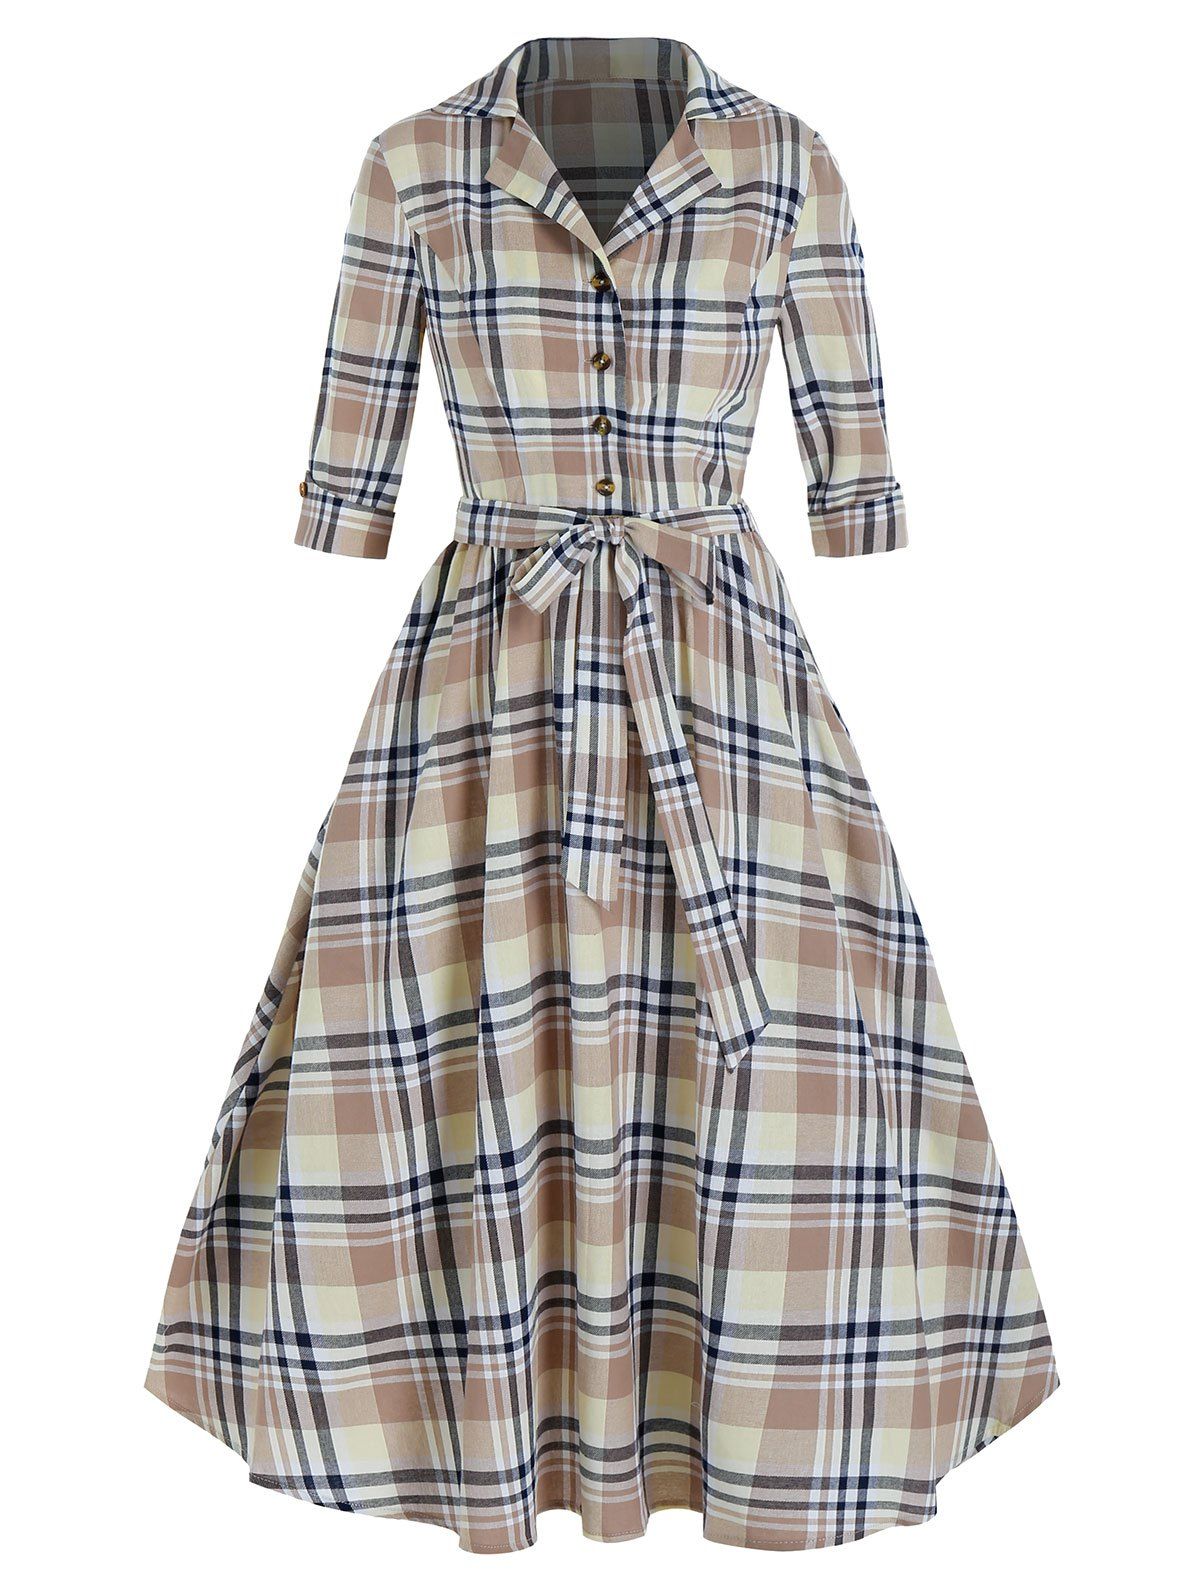 Plaid Print Half Button Belted Vintage Dress - multicolor A 2XL